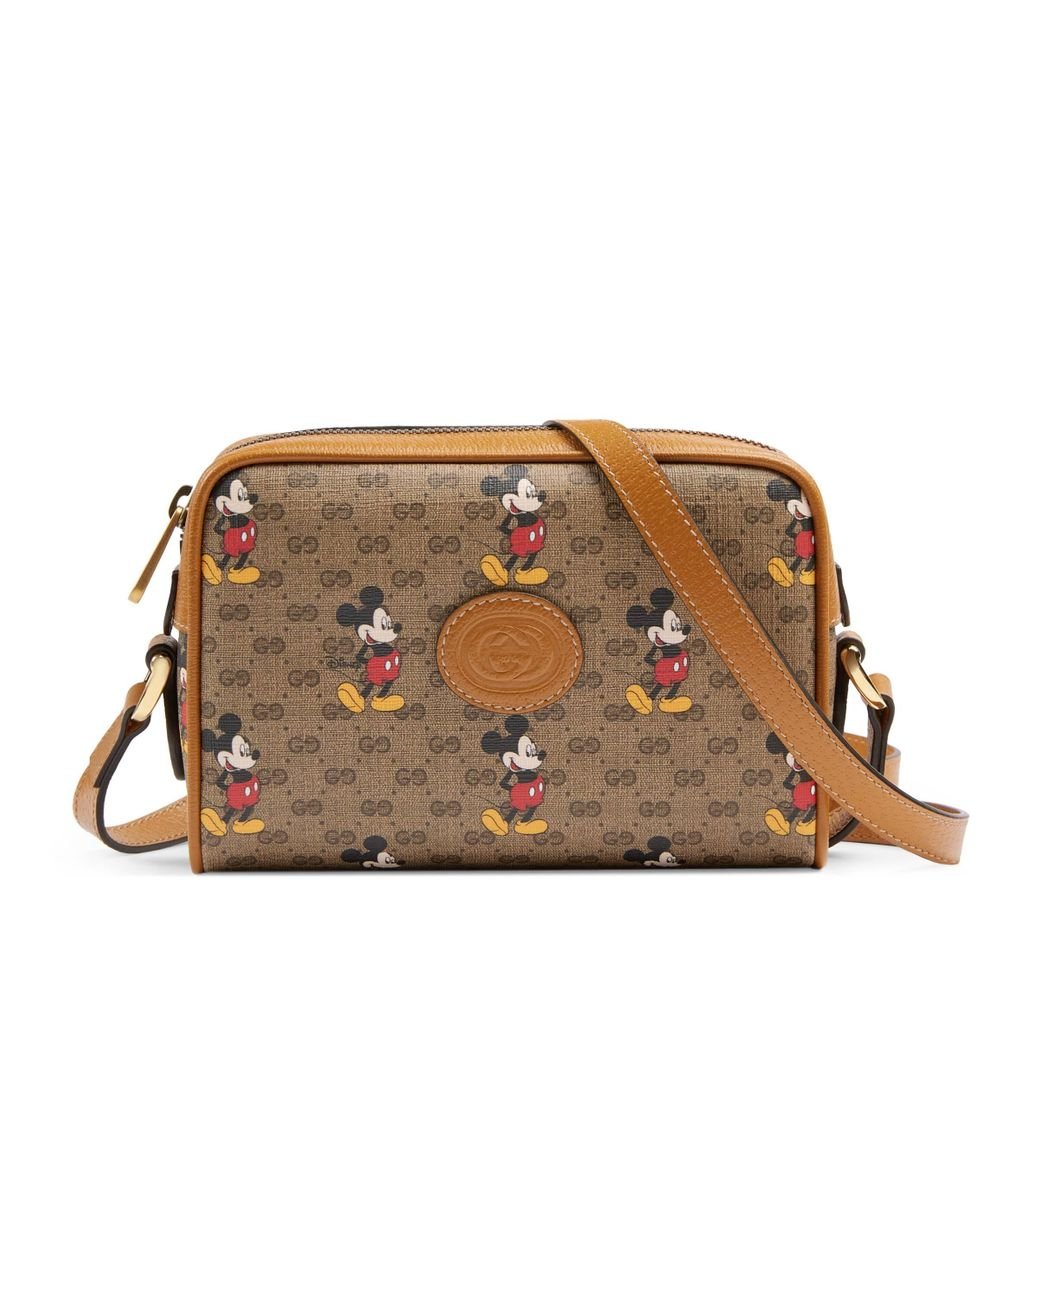 Gucci x Disney GG Supreme Shoulder Bag Beige